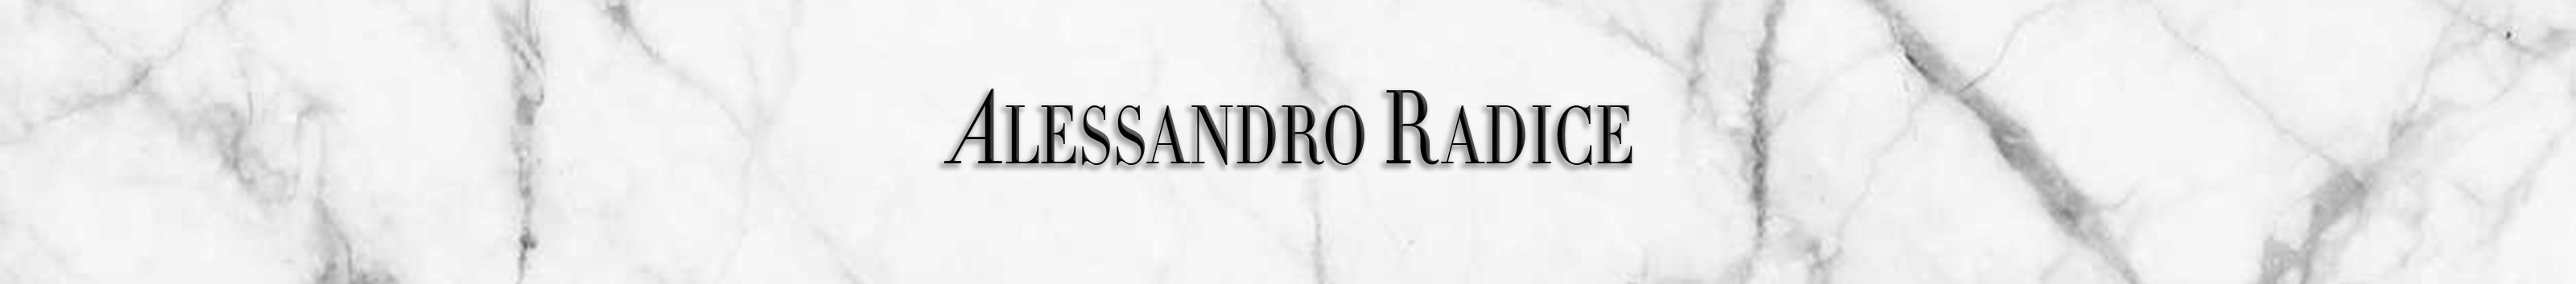 Profil-Banner von Alessandro Radice